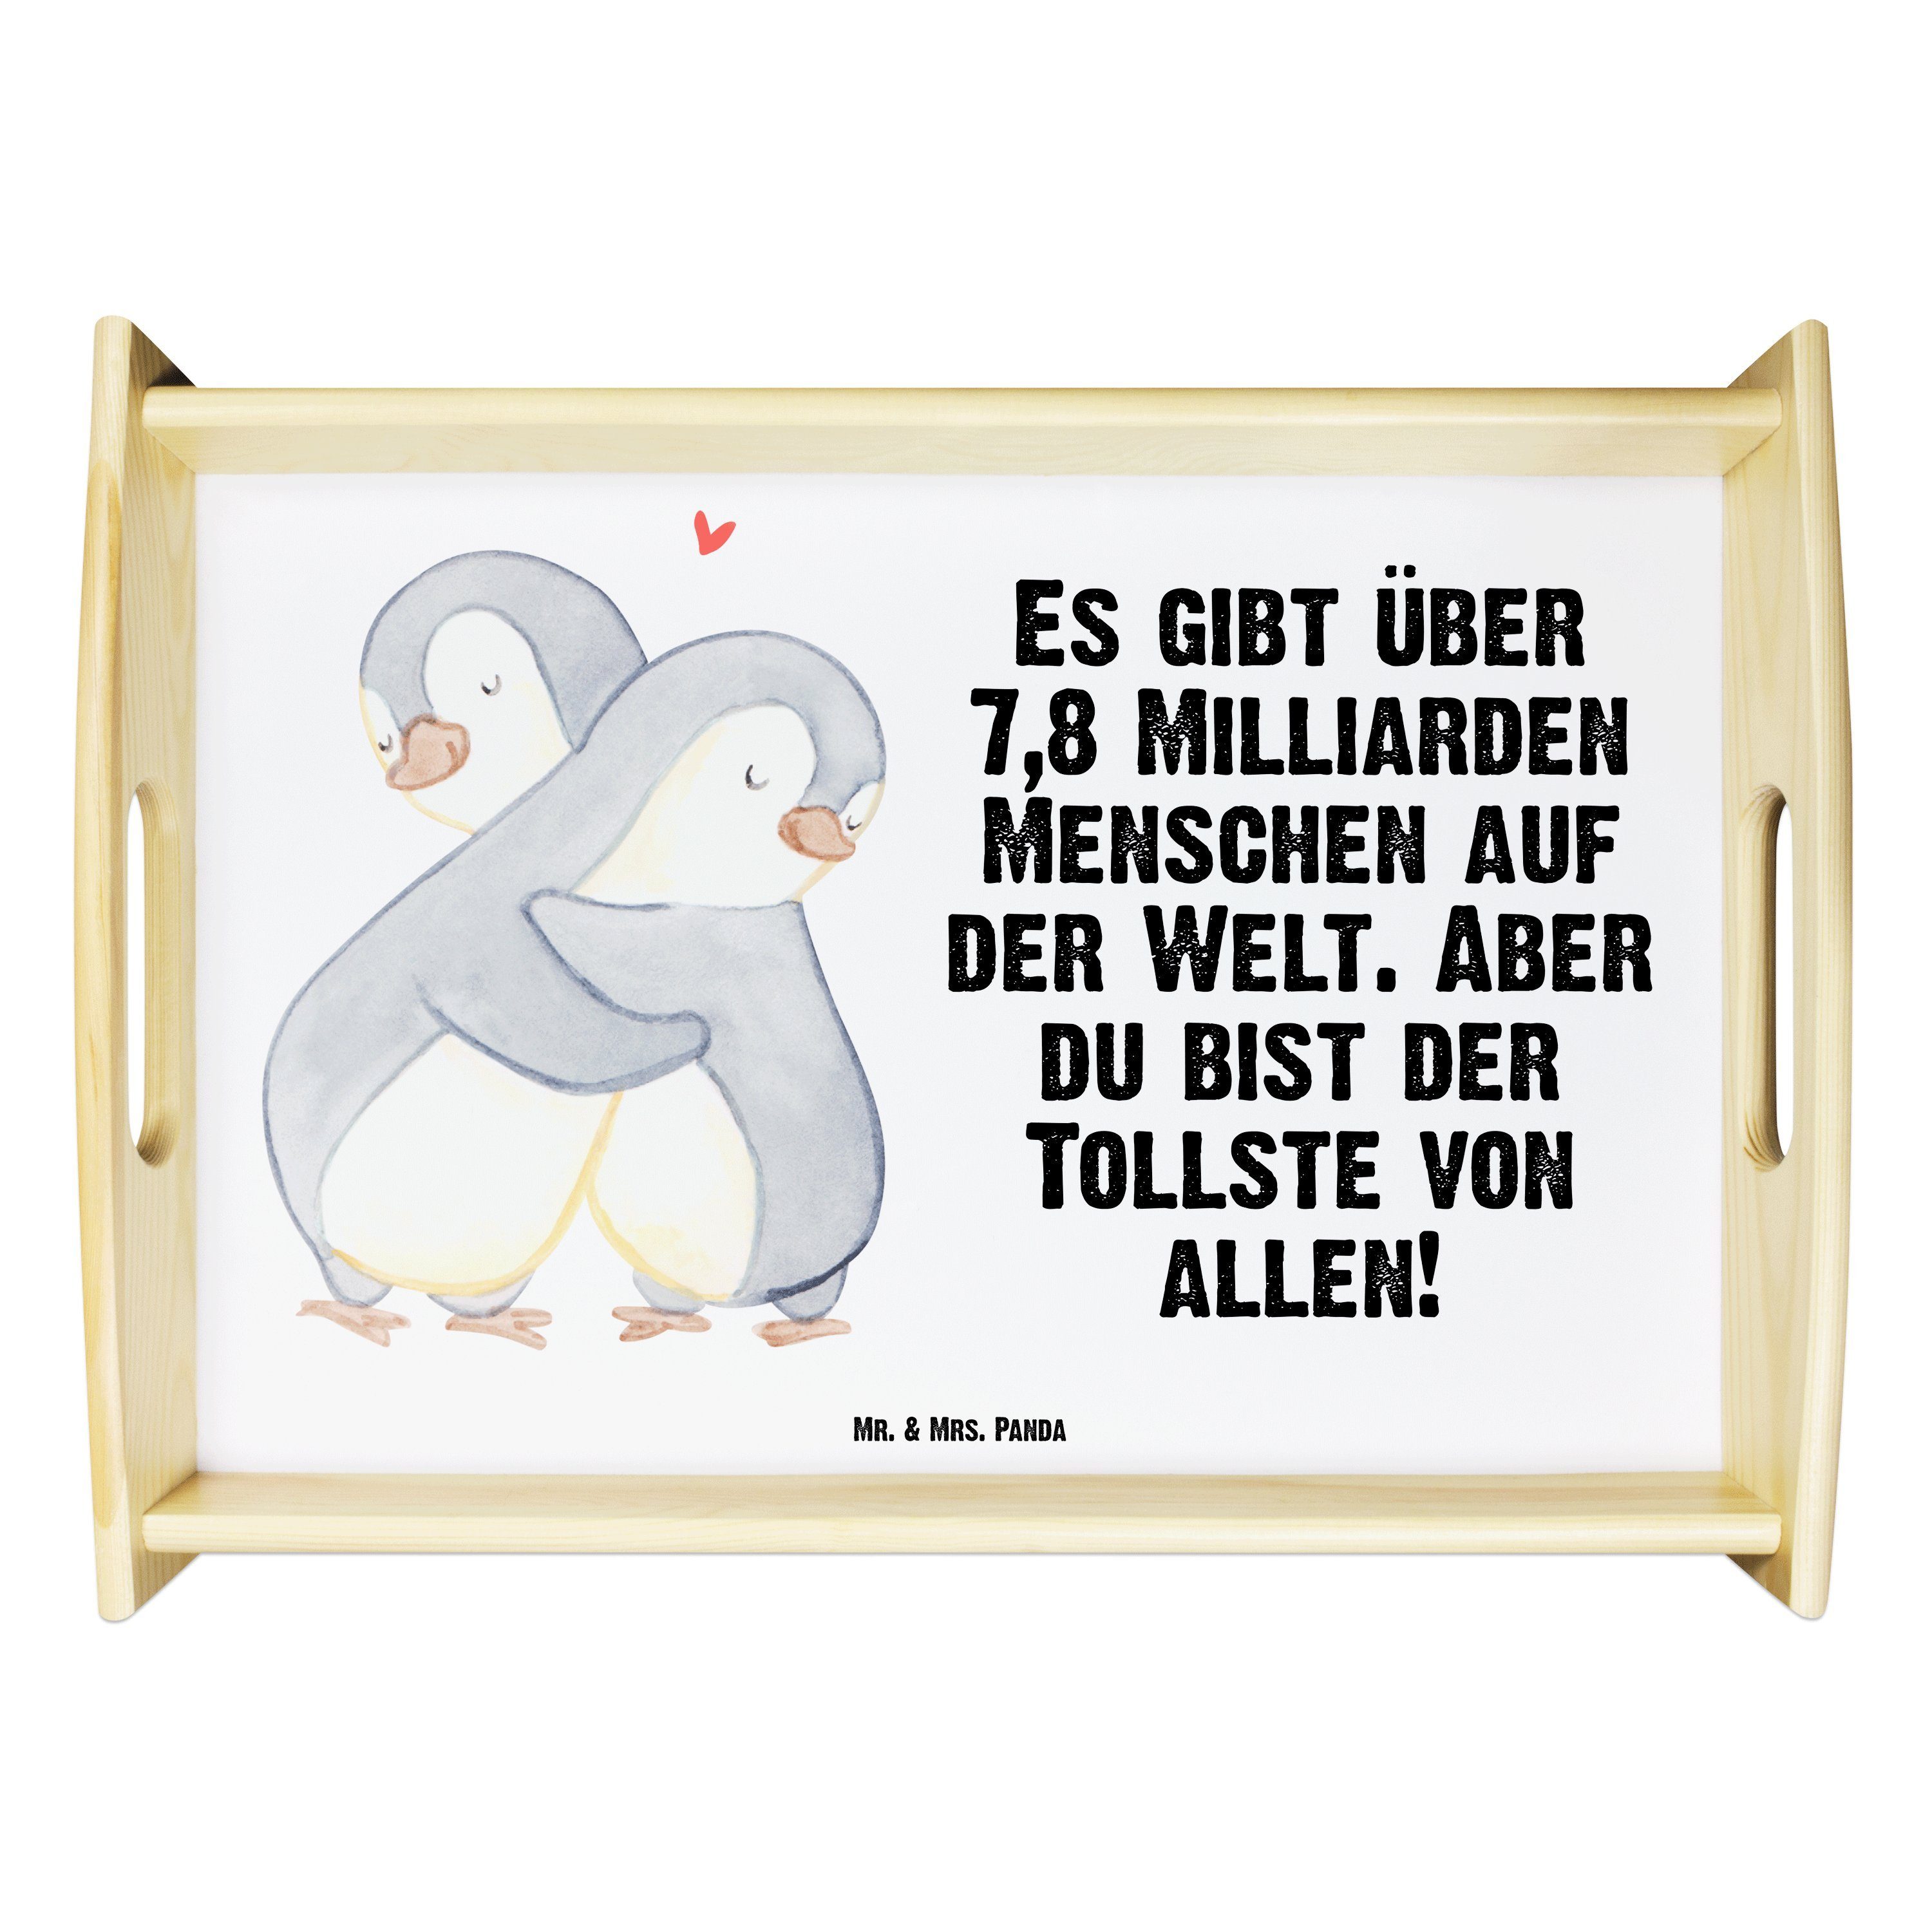 Mr. & Mrs. Panda Tablett Weiß - Geschenk, (1-tlg) Echtholz lasiert, - Hocheitstag, Heiratsantrag, Kuscheln Tabl, Pinguine